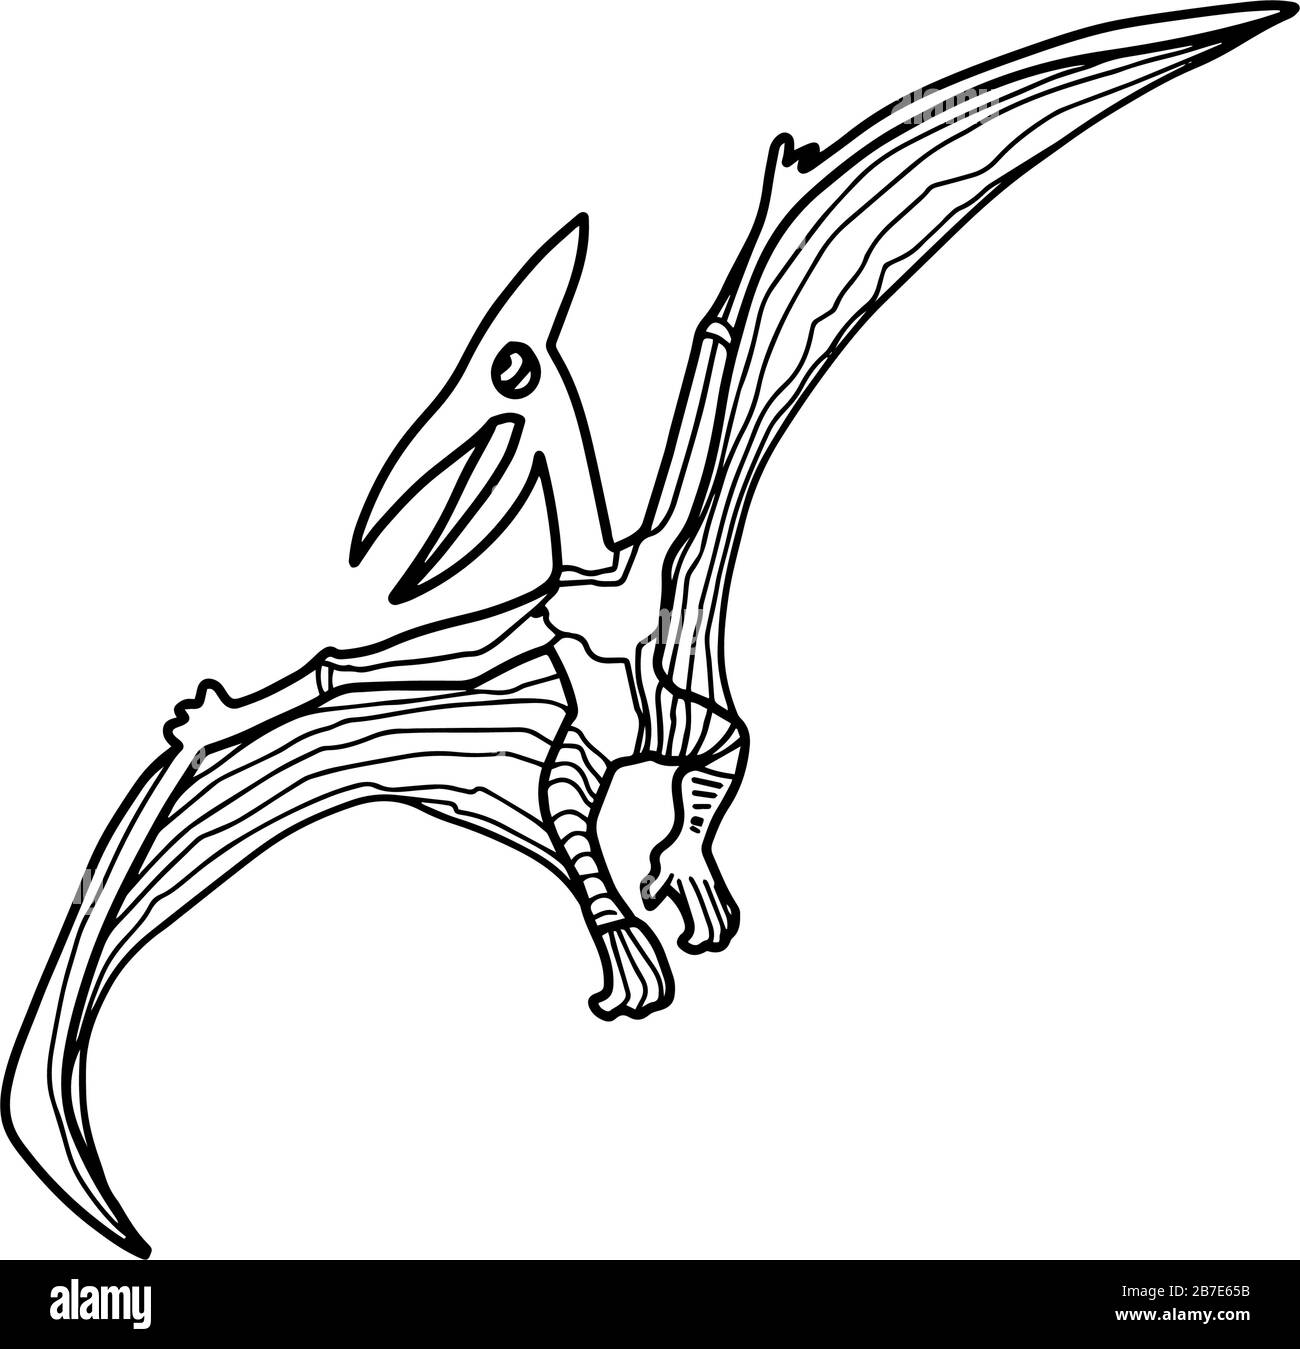 Dinosaurier Pterodactyl oder Pteranodon Farbbuch für Kinder und Erwachsene.Hand gezeichnet Antistress Farbseite. Vector Outline T Rex Illustration Stock Vektor